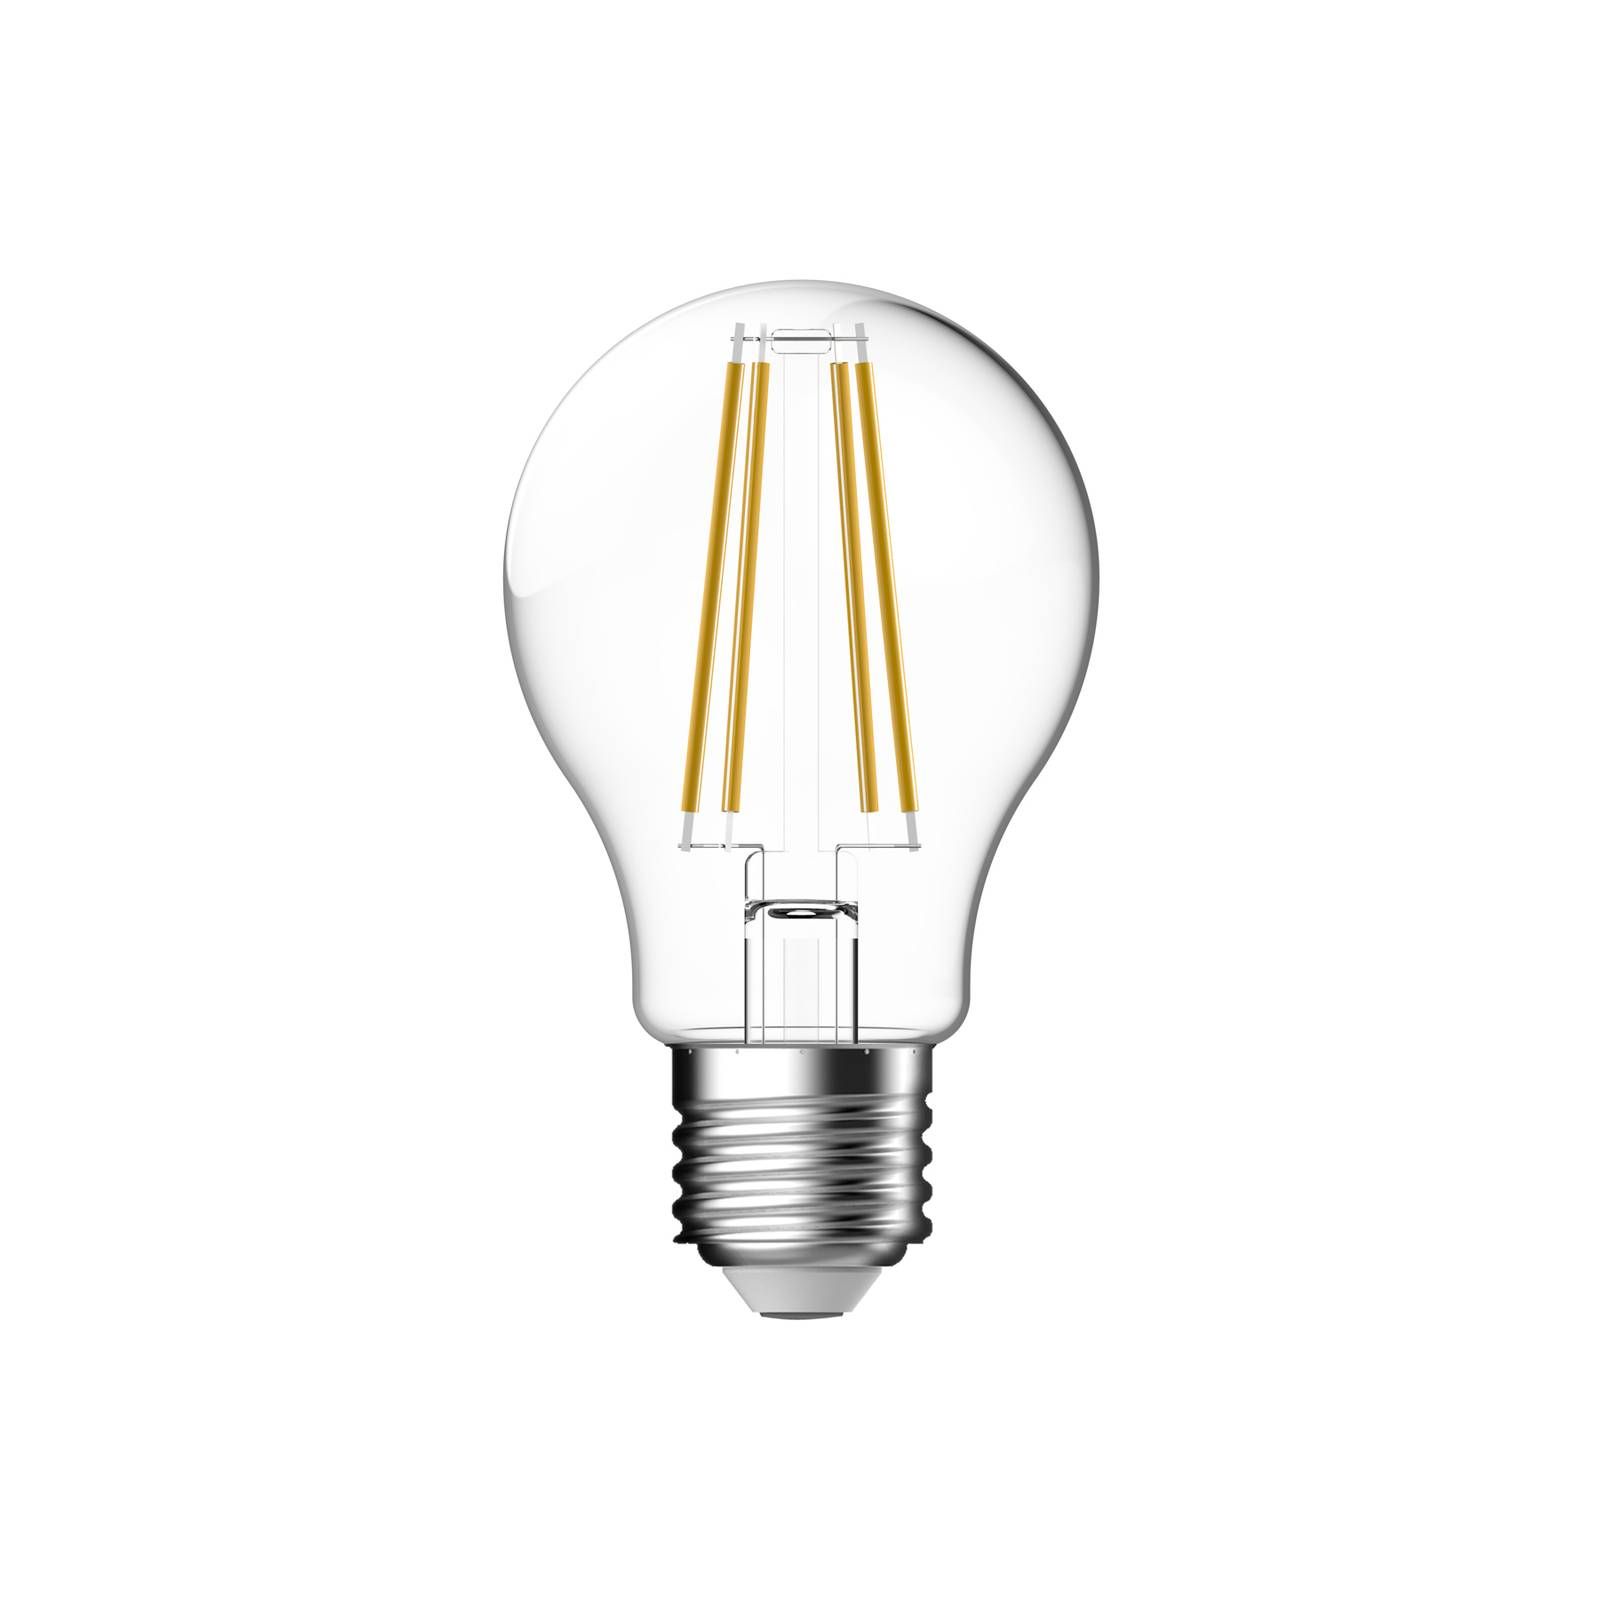 Nordlux LED filament Smart E27 4, 7W CCT 650lm sada 3 ks, E27, 4.7W, Energialuokka: E, P: 10.4 cm